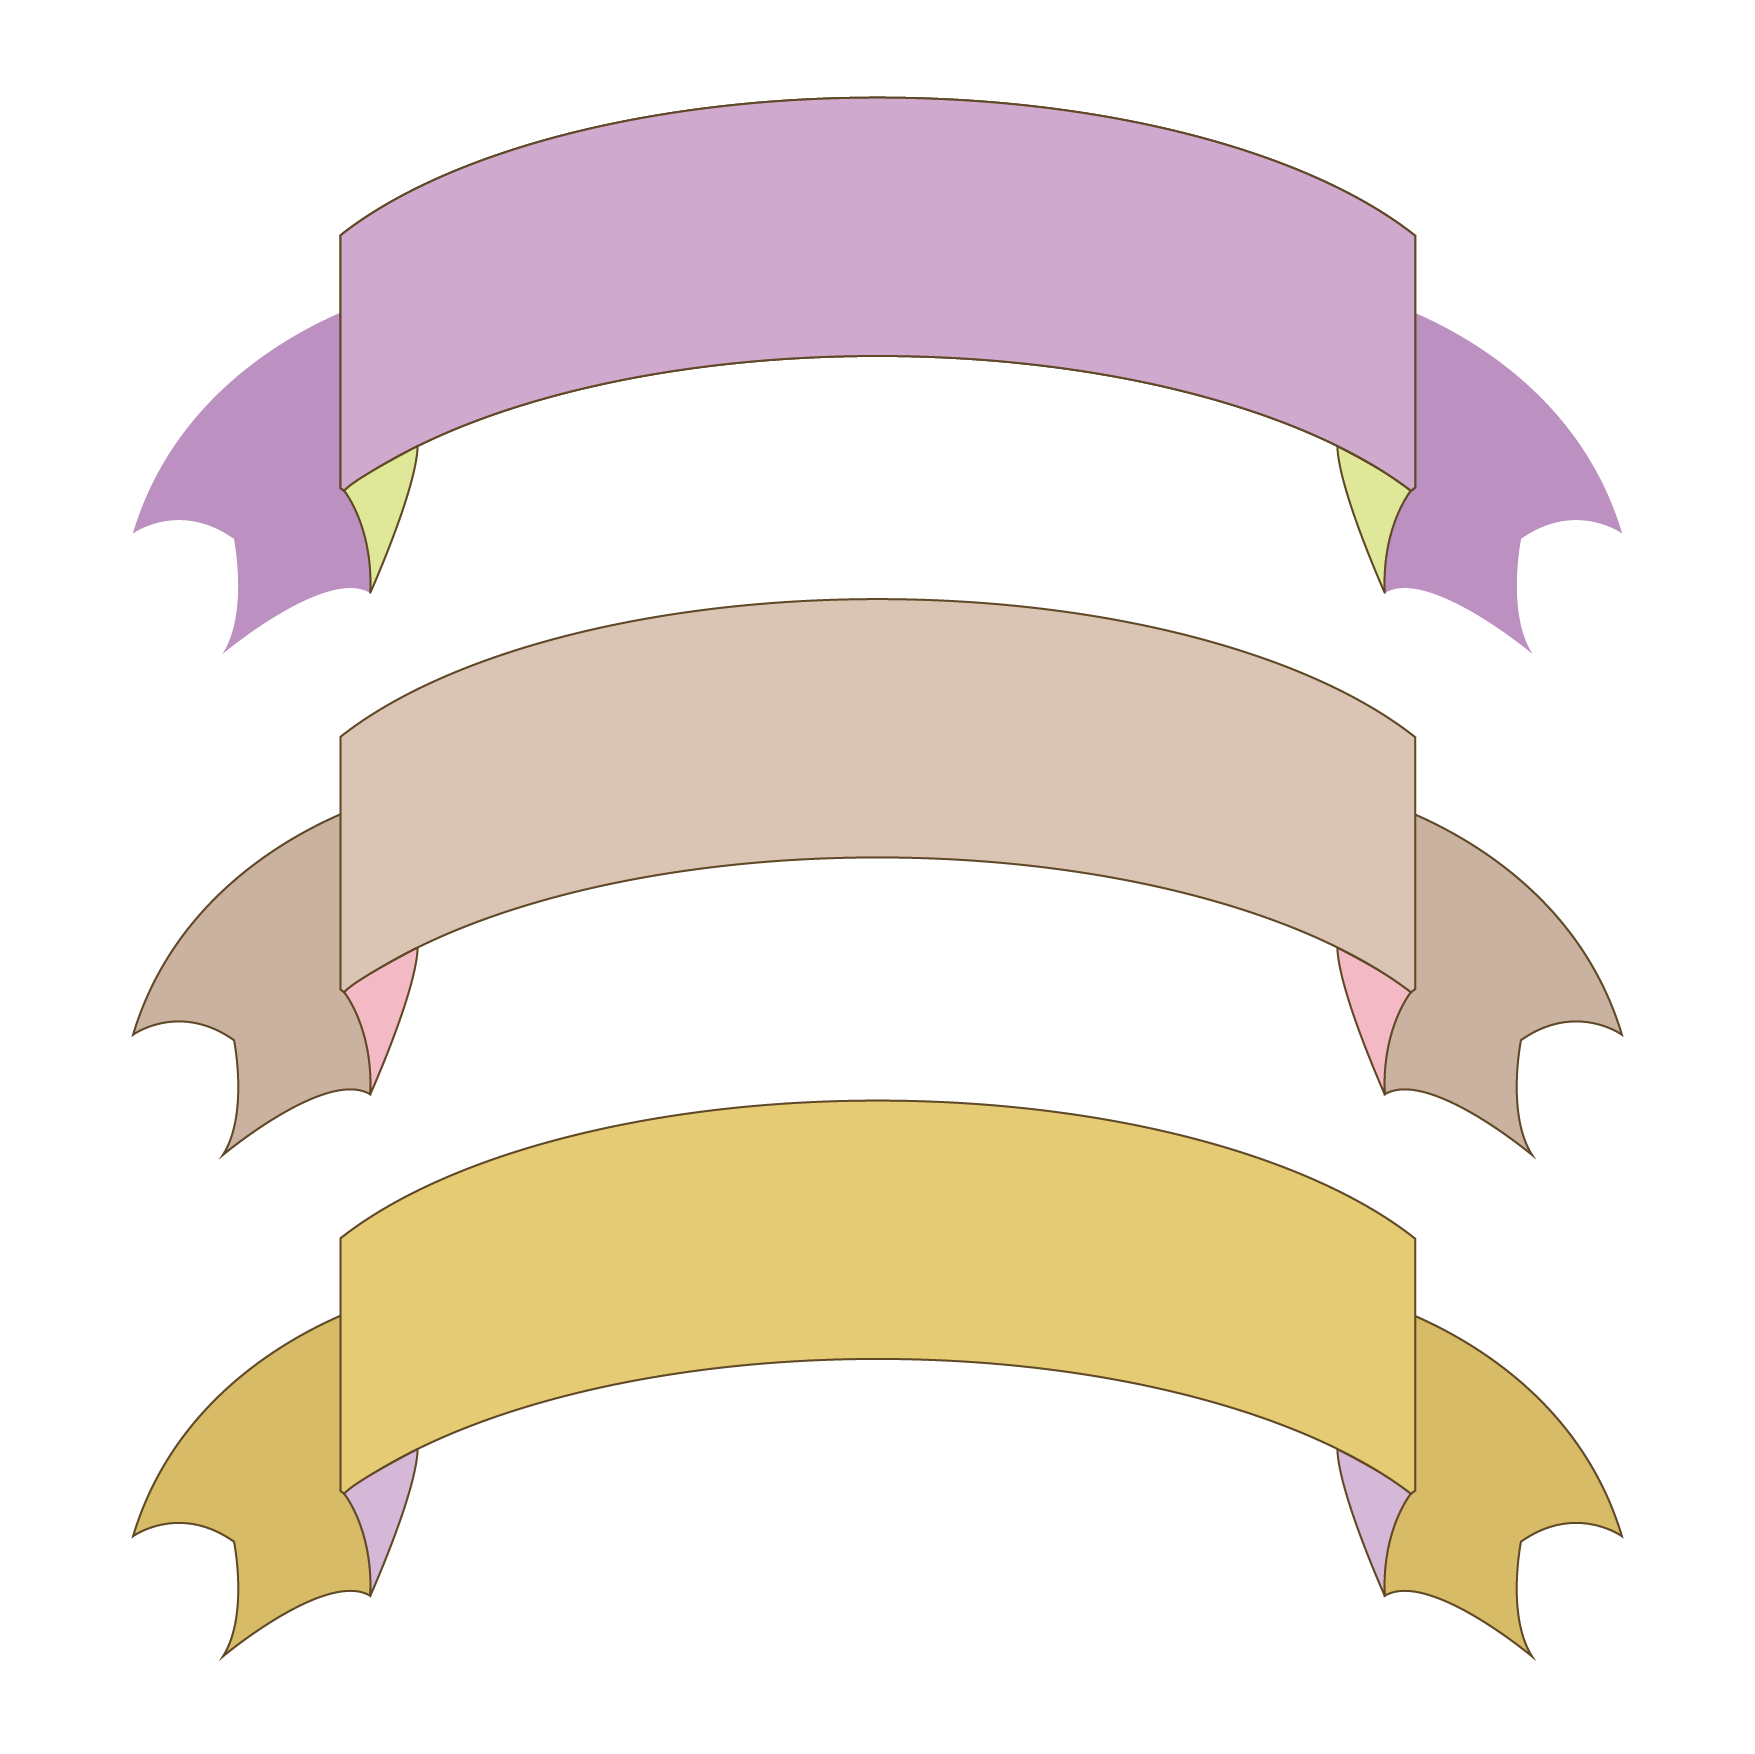 アーチ型ネームプレート フレーム 紫 ベージュ 黄色 イラスト 商用フリー 無料 のイラスト素材なら イラストマンション